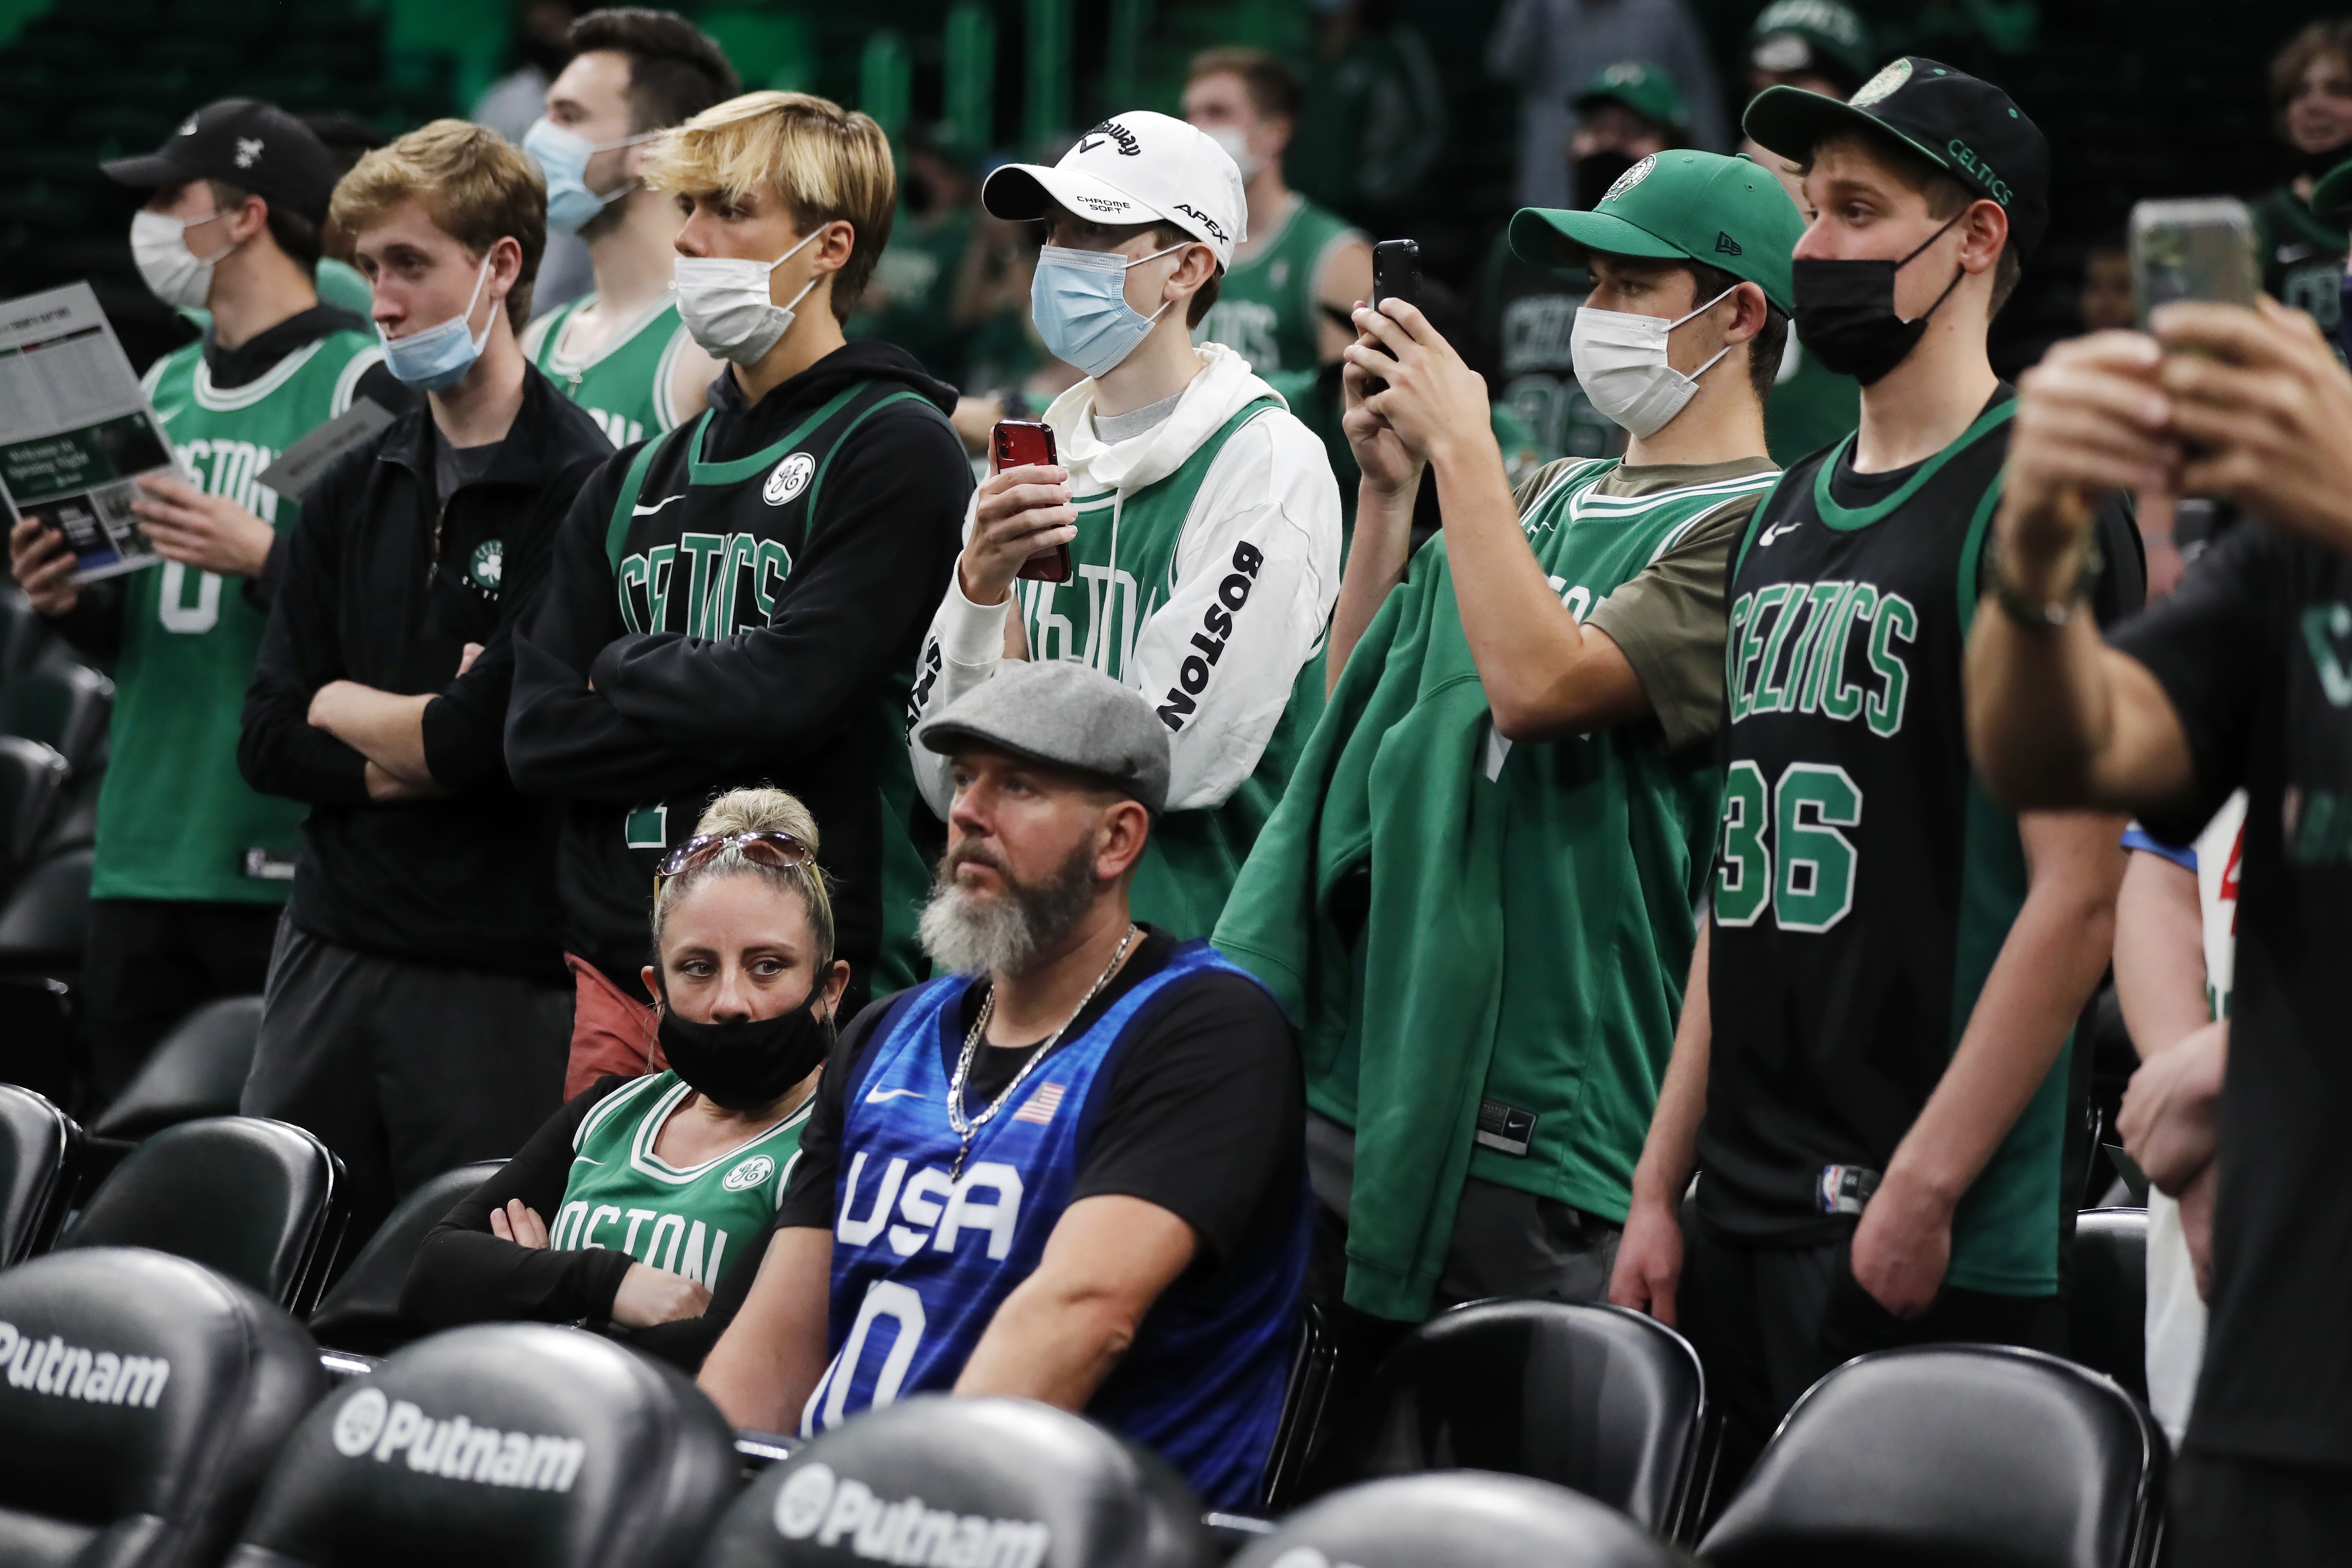 Celtics welcome fans back to TD Garden